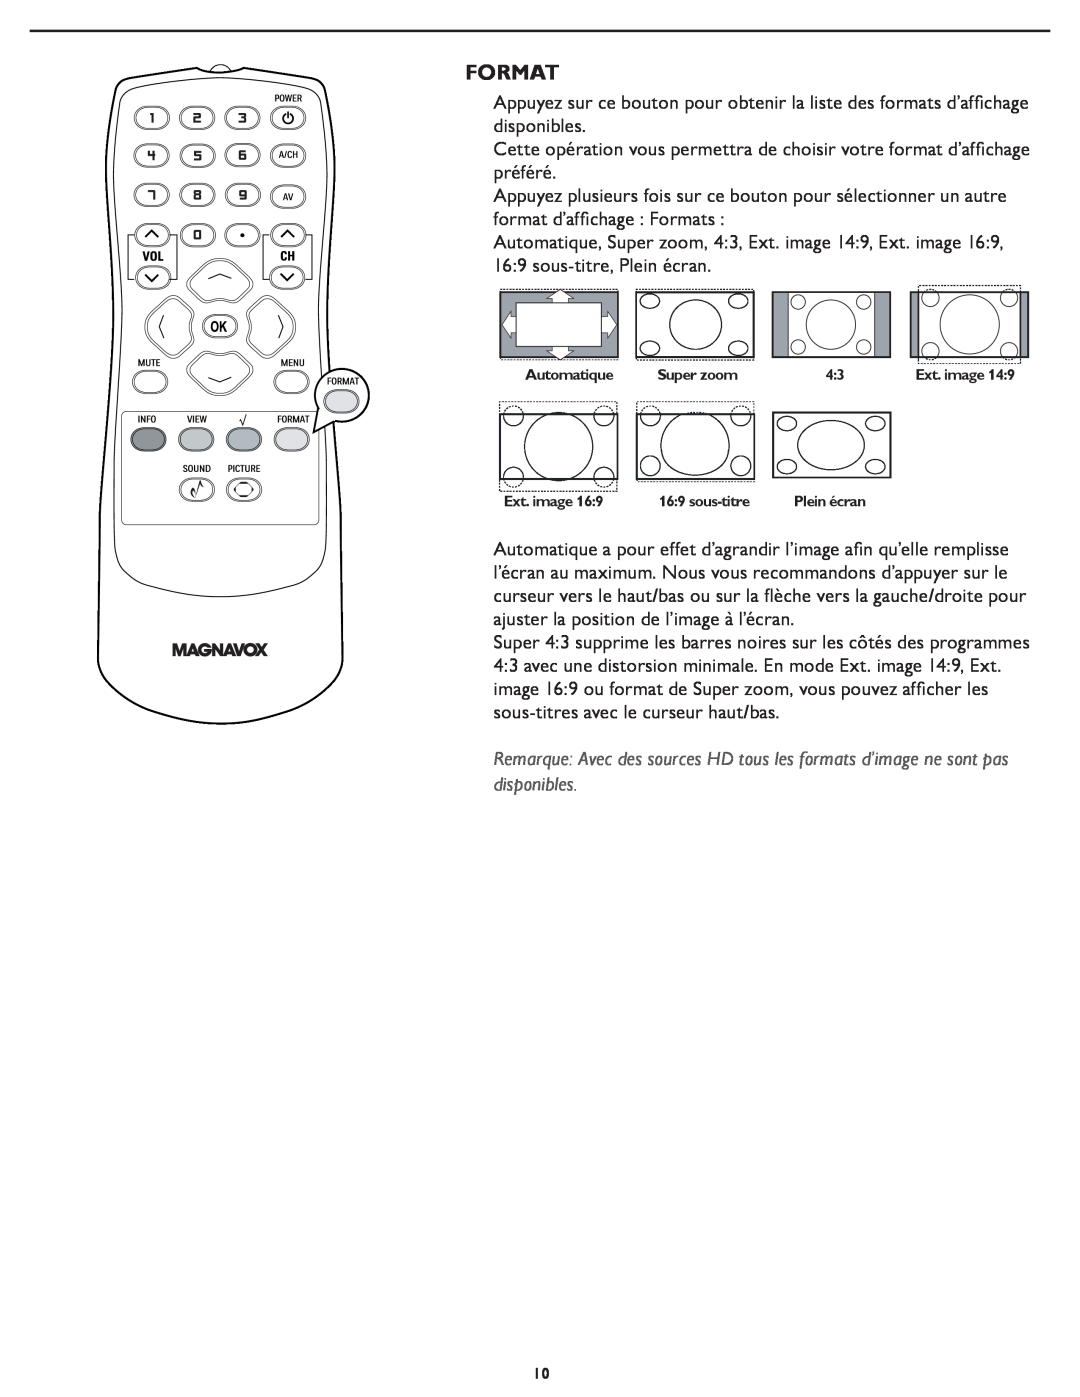 Magnavox 331D, 321D user manual Format, Automatique, Super zoom, Ext. image, sous-titre 